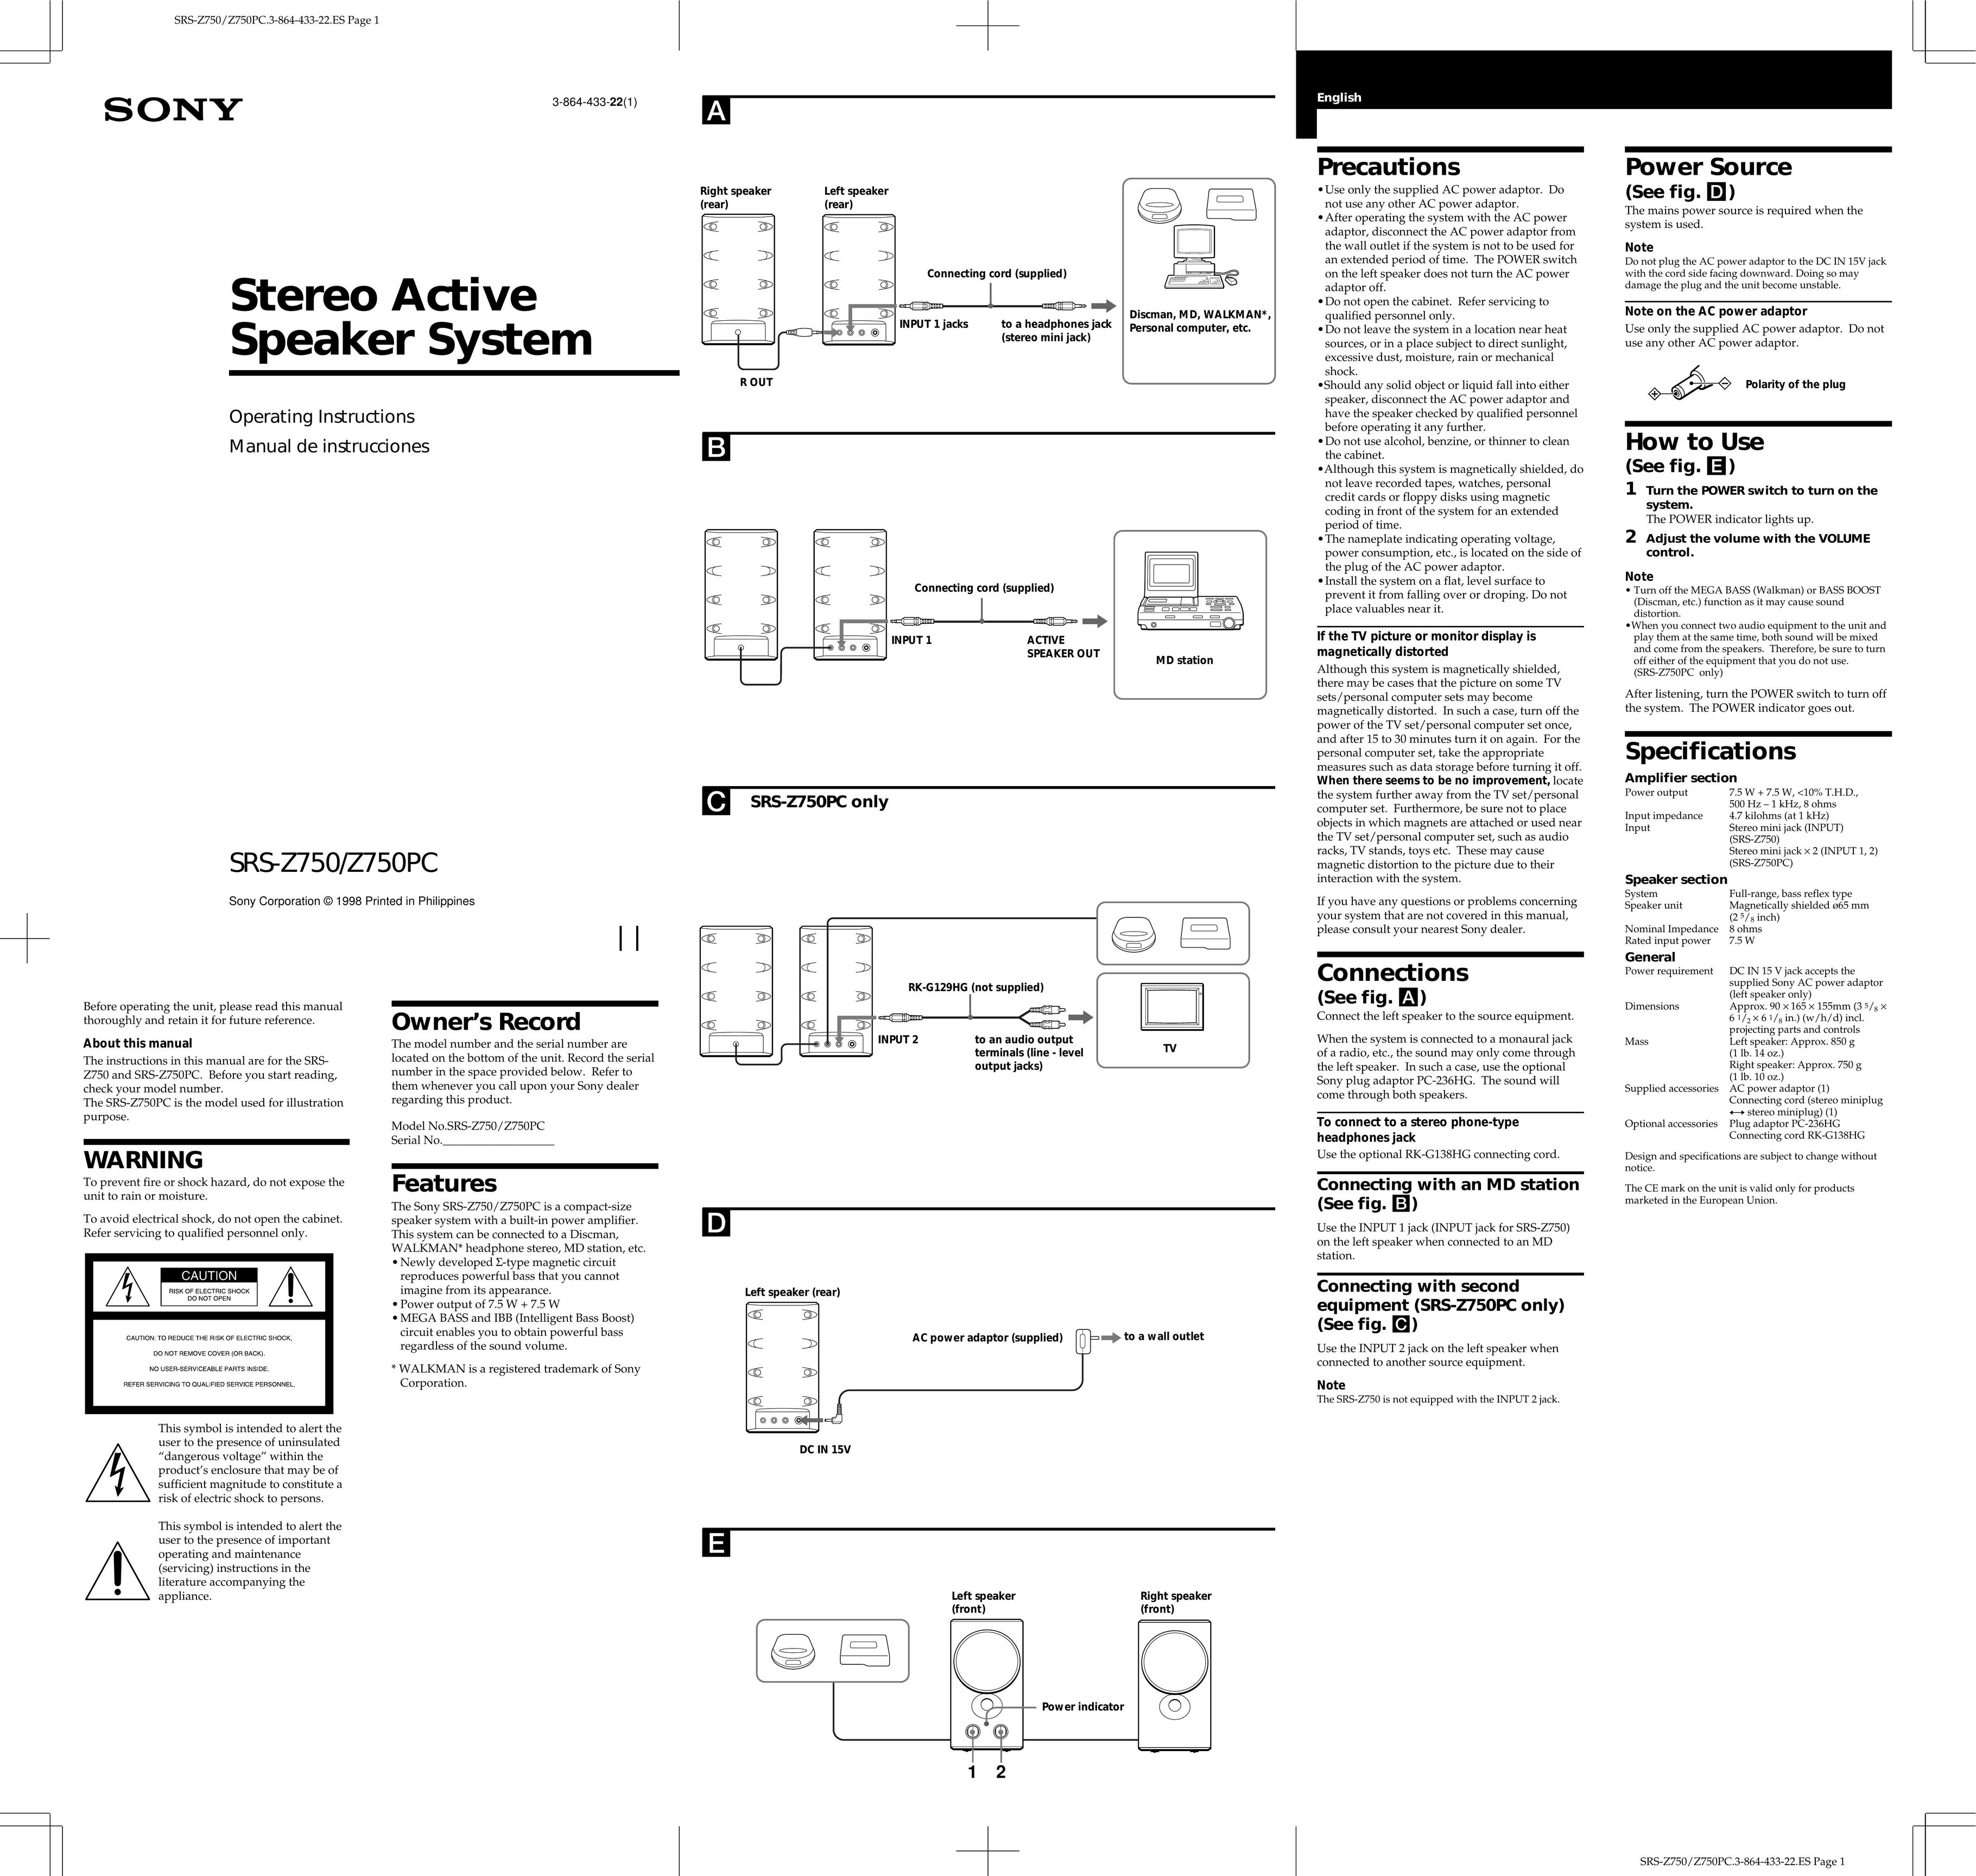 Sony SRS-Z750PC Portable Speaker User Manual